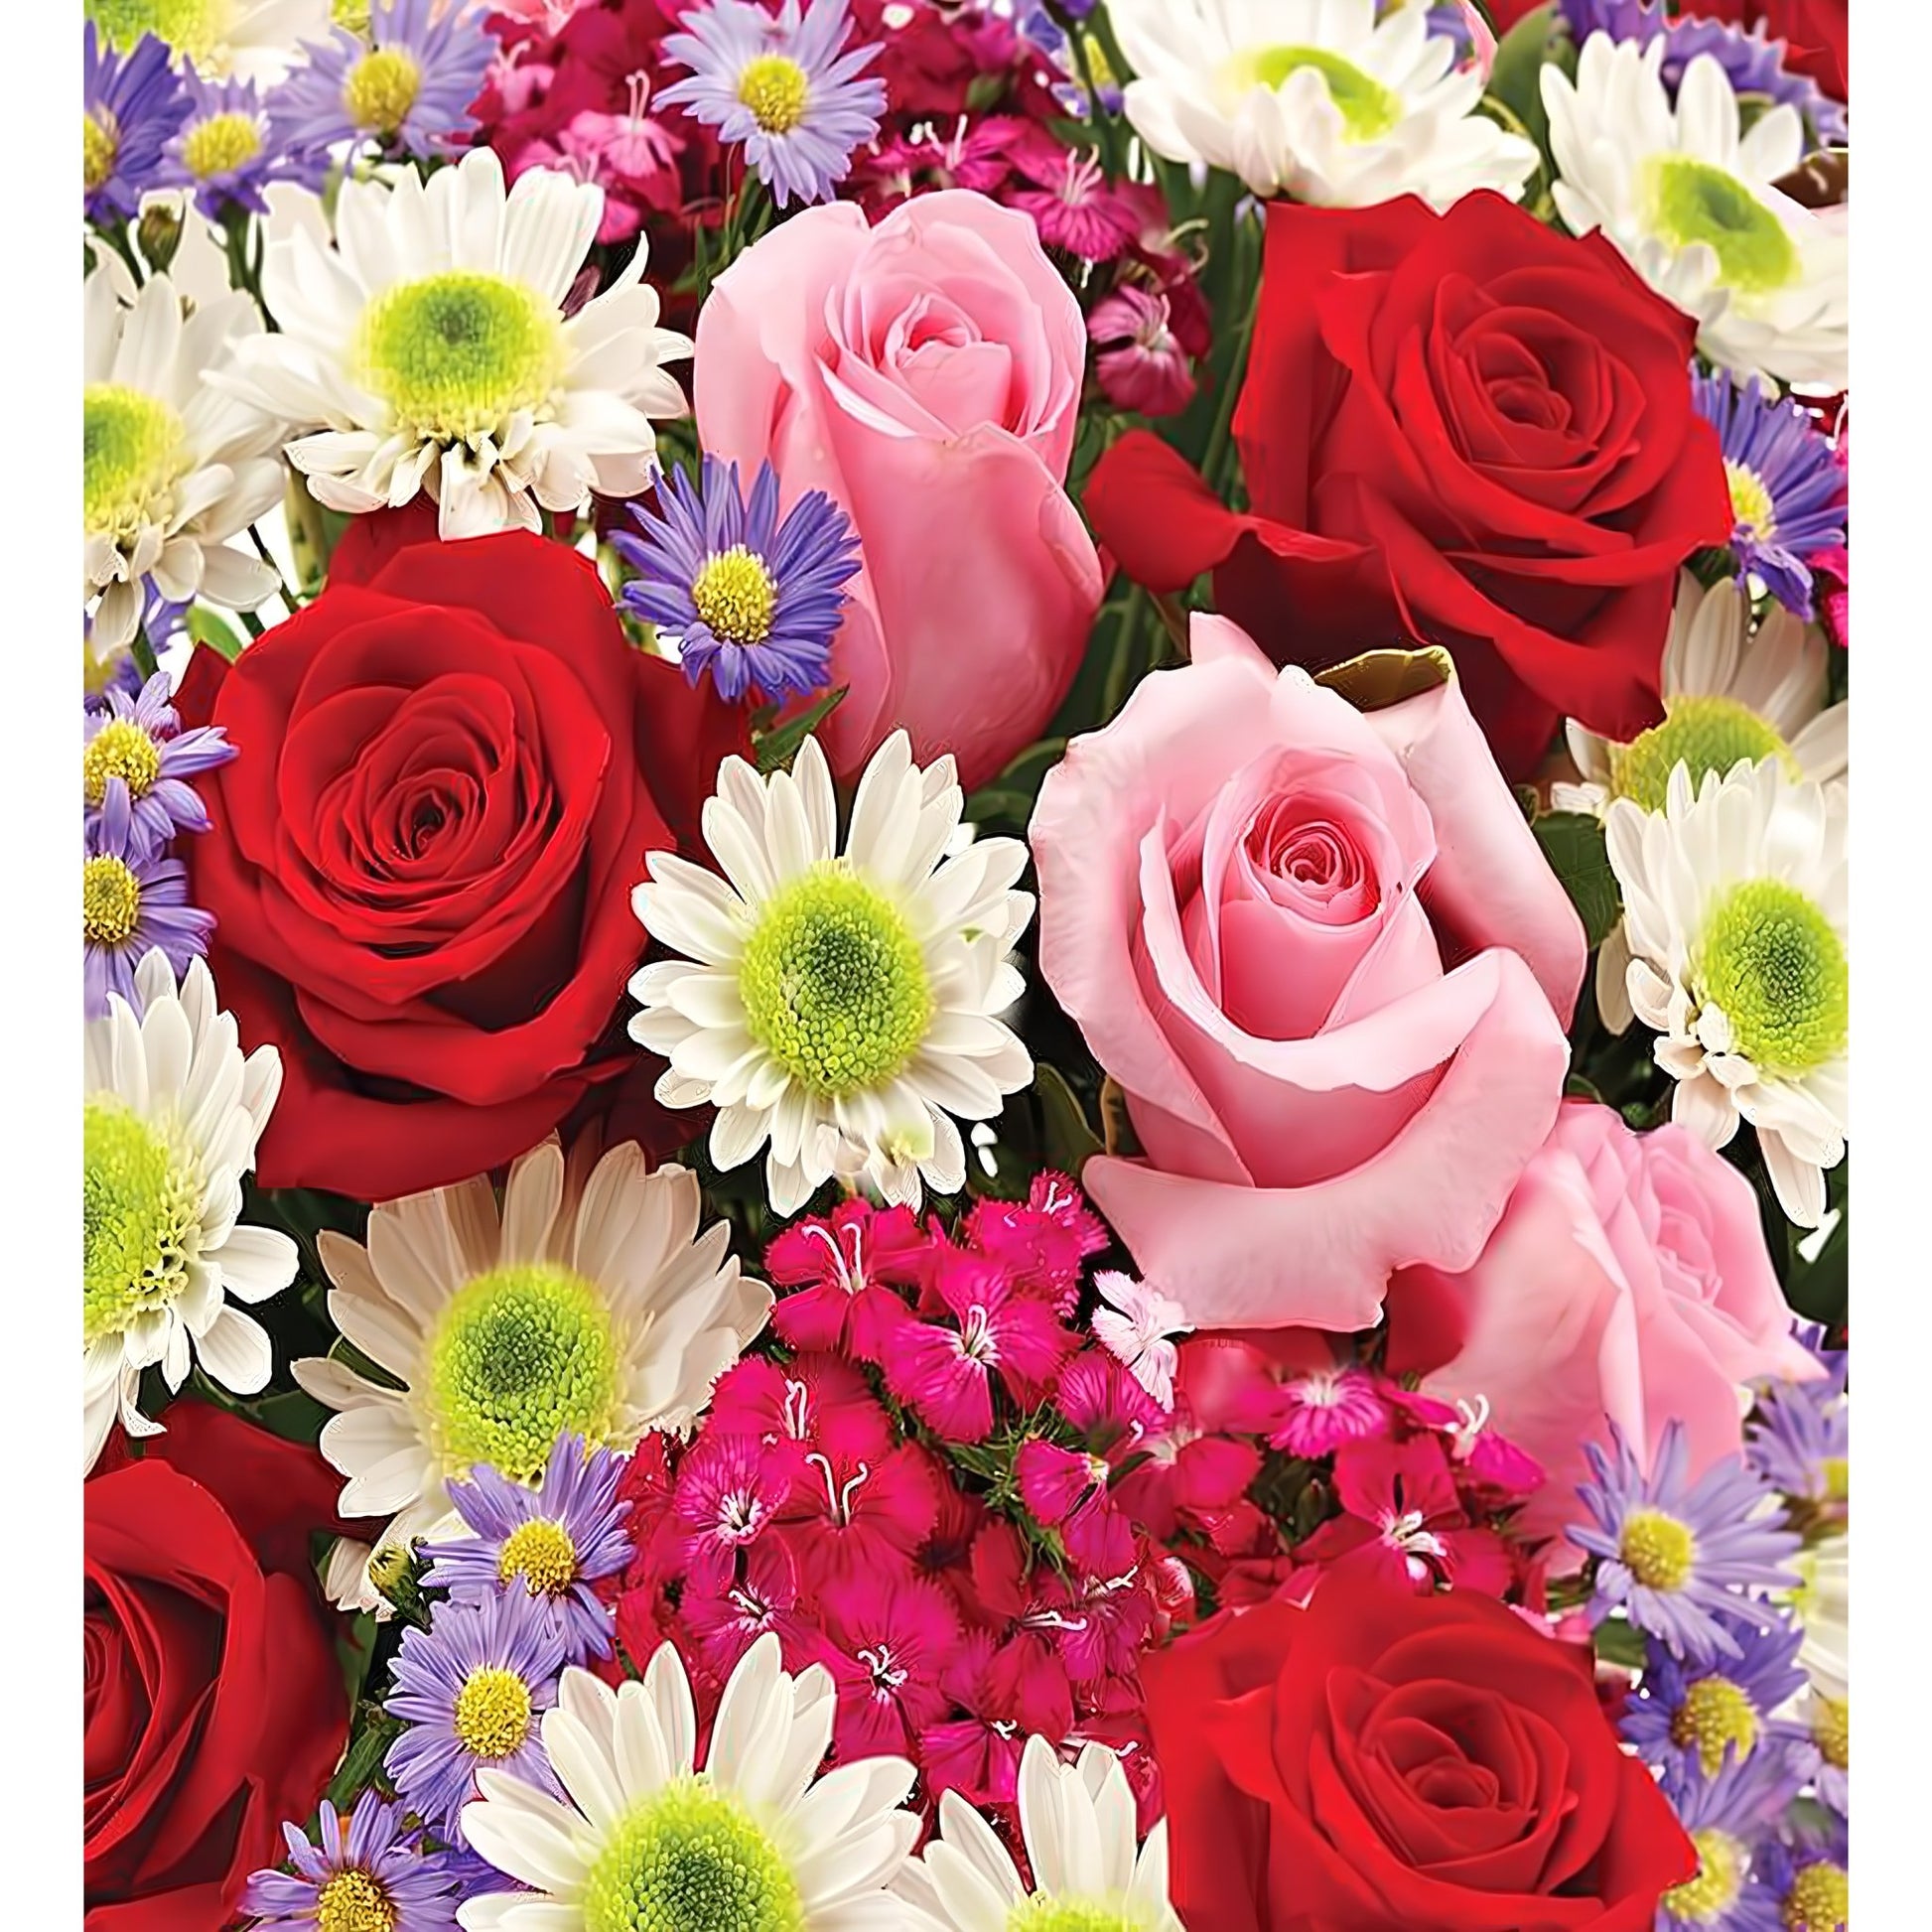 Florist Choice - Floral Arrangement - Queens Flower Delivery